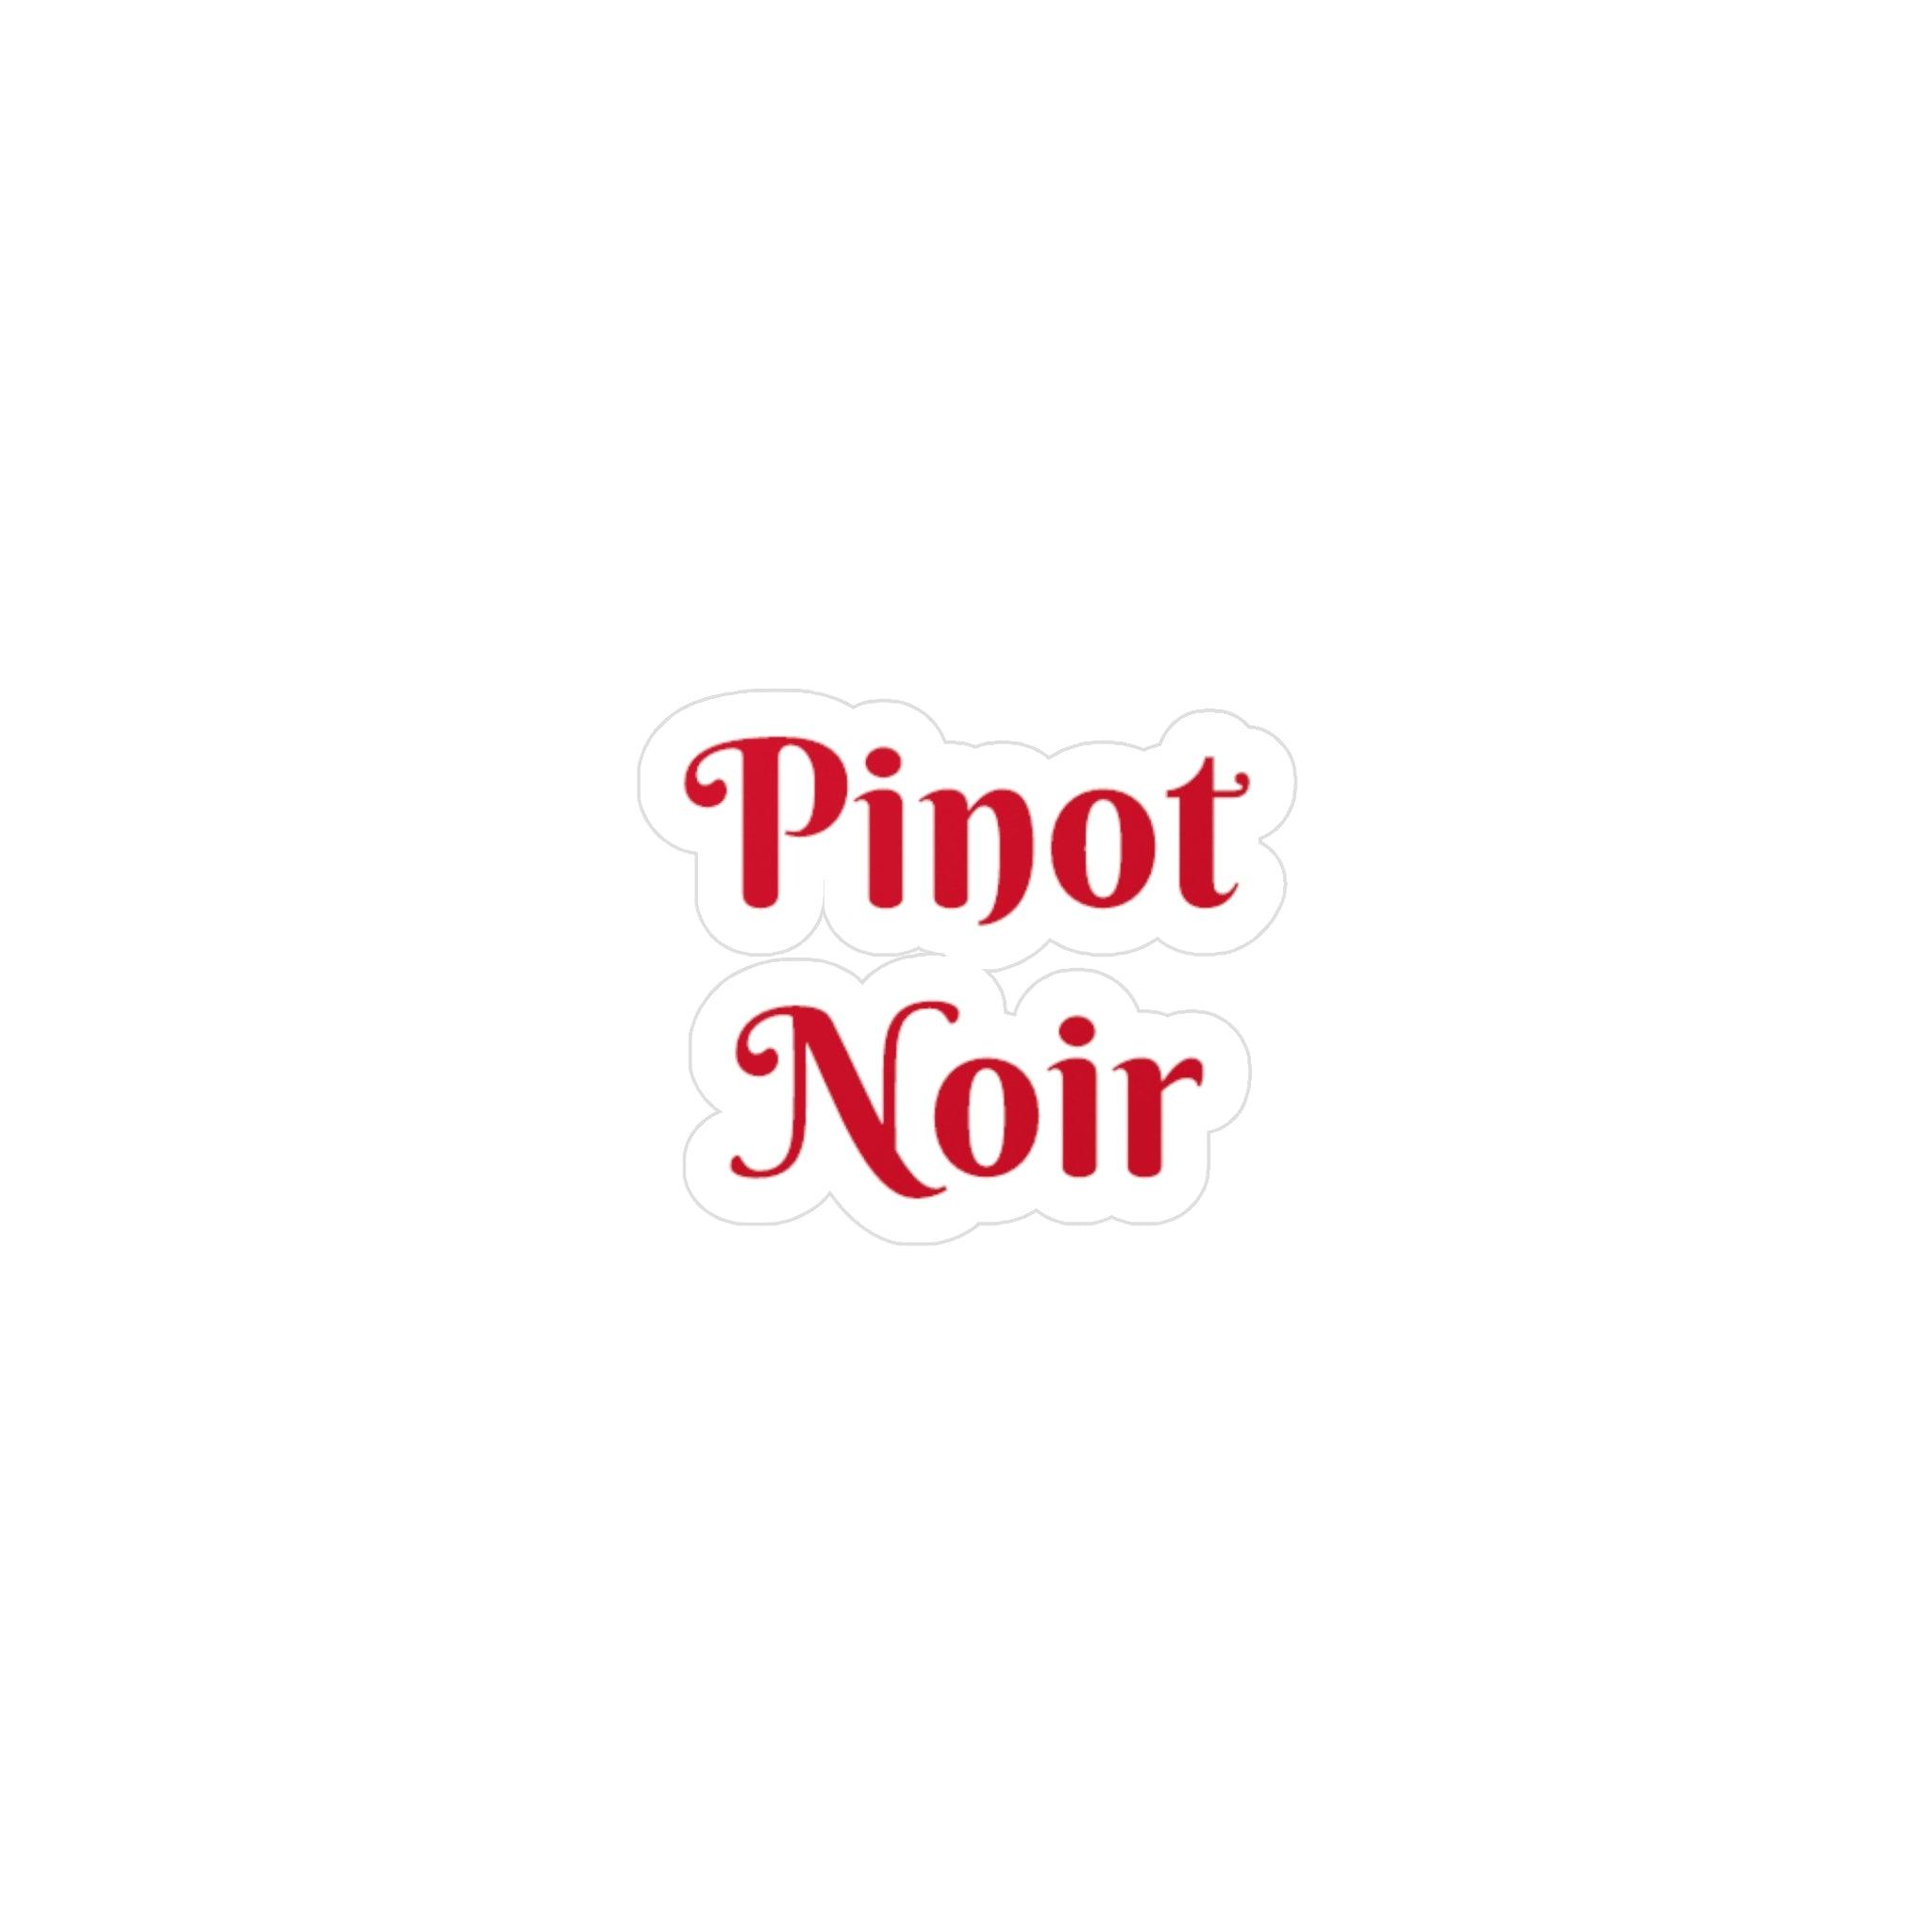 Pinot Noir Kiss-Cut Vinyl Decals